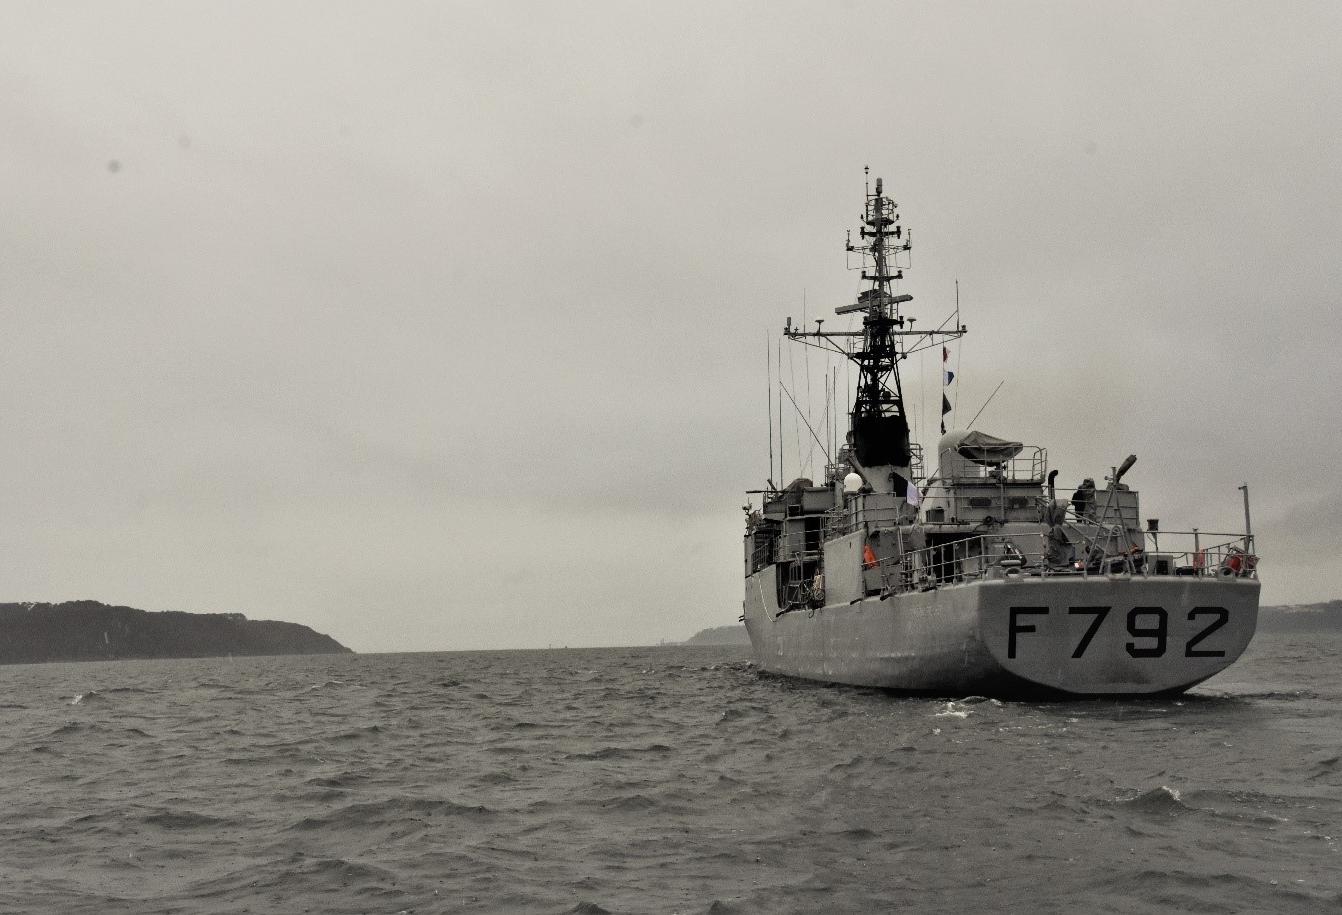  Opération Corymbe : Déploiement du patrouilleur de haute mer Premier-Maître L’Her dans le golfe de Guinée